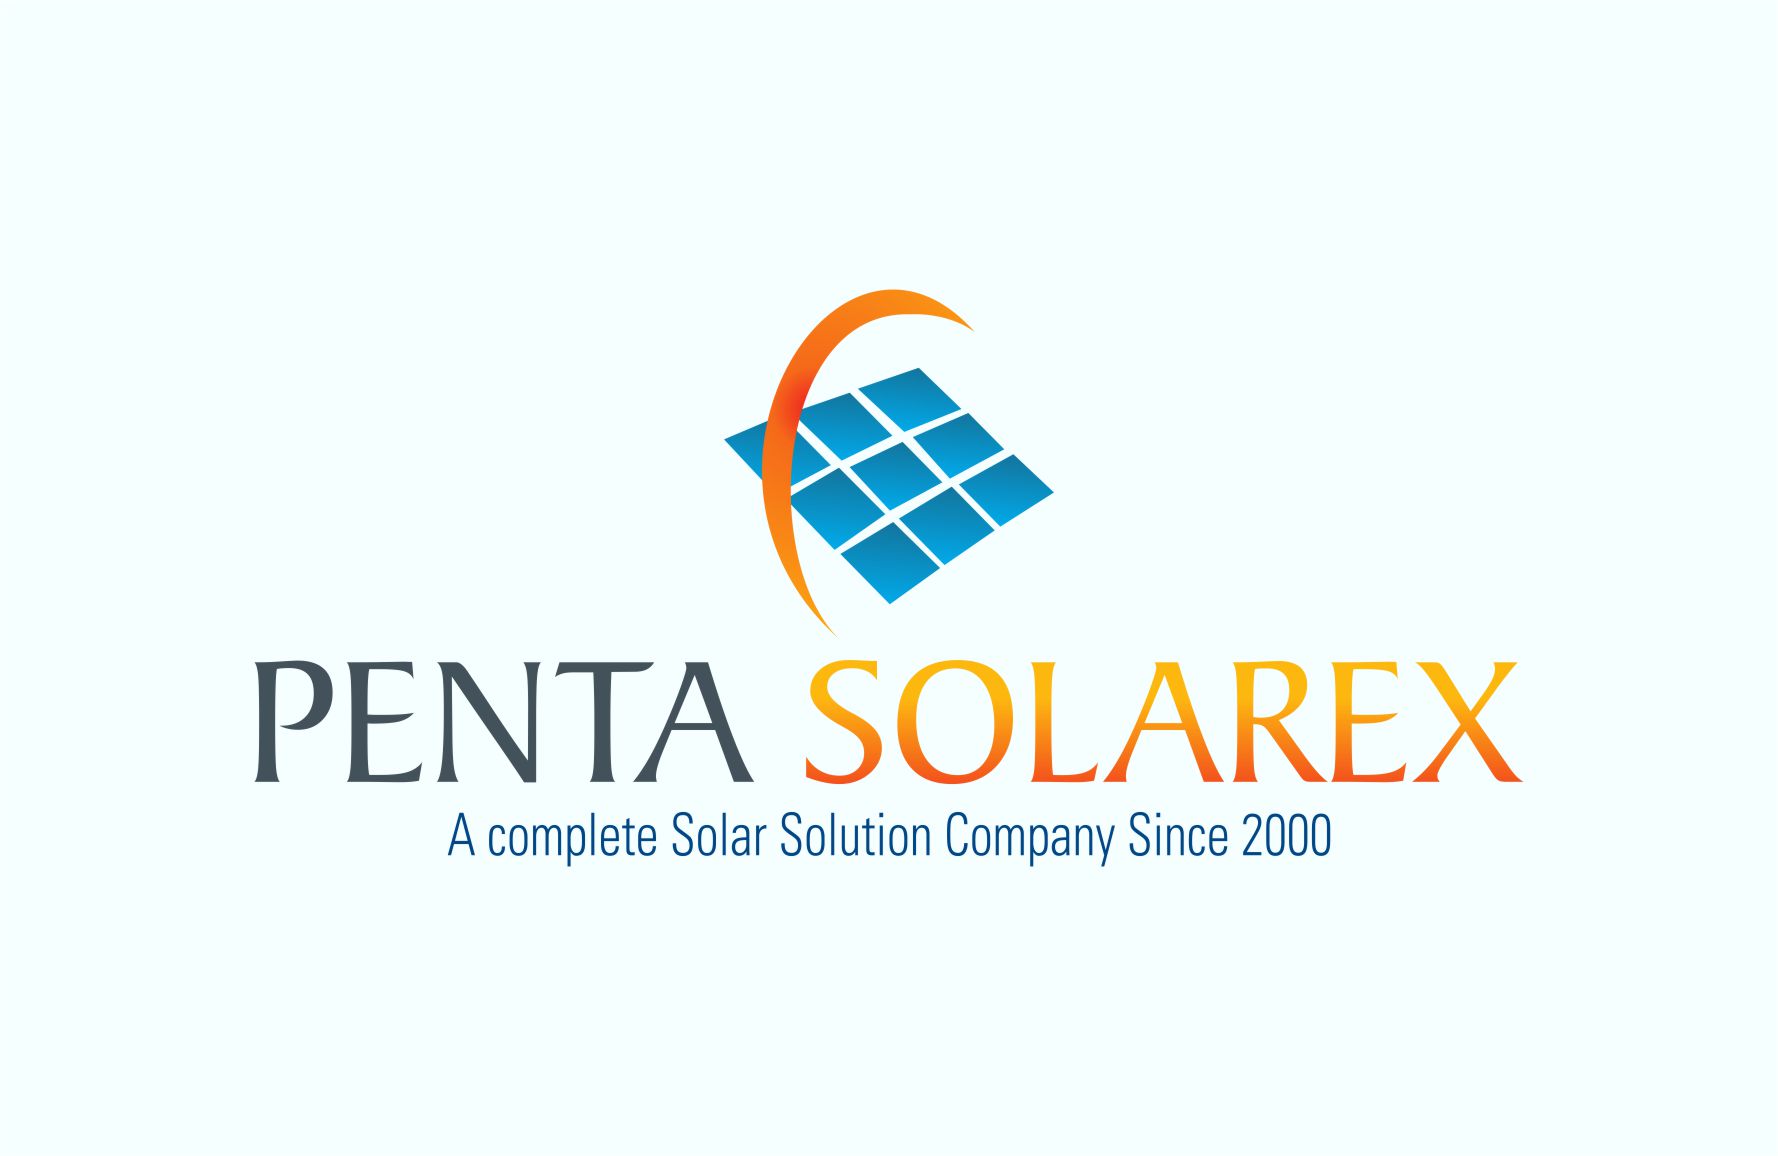 Penta Solarex